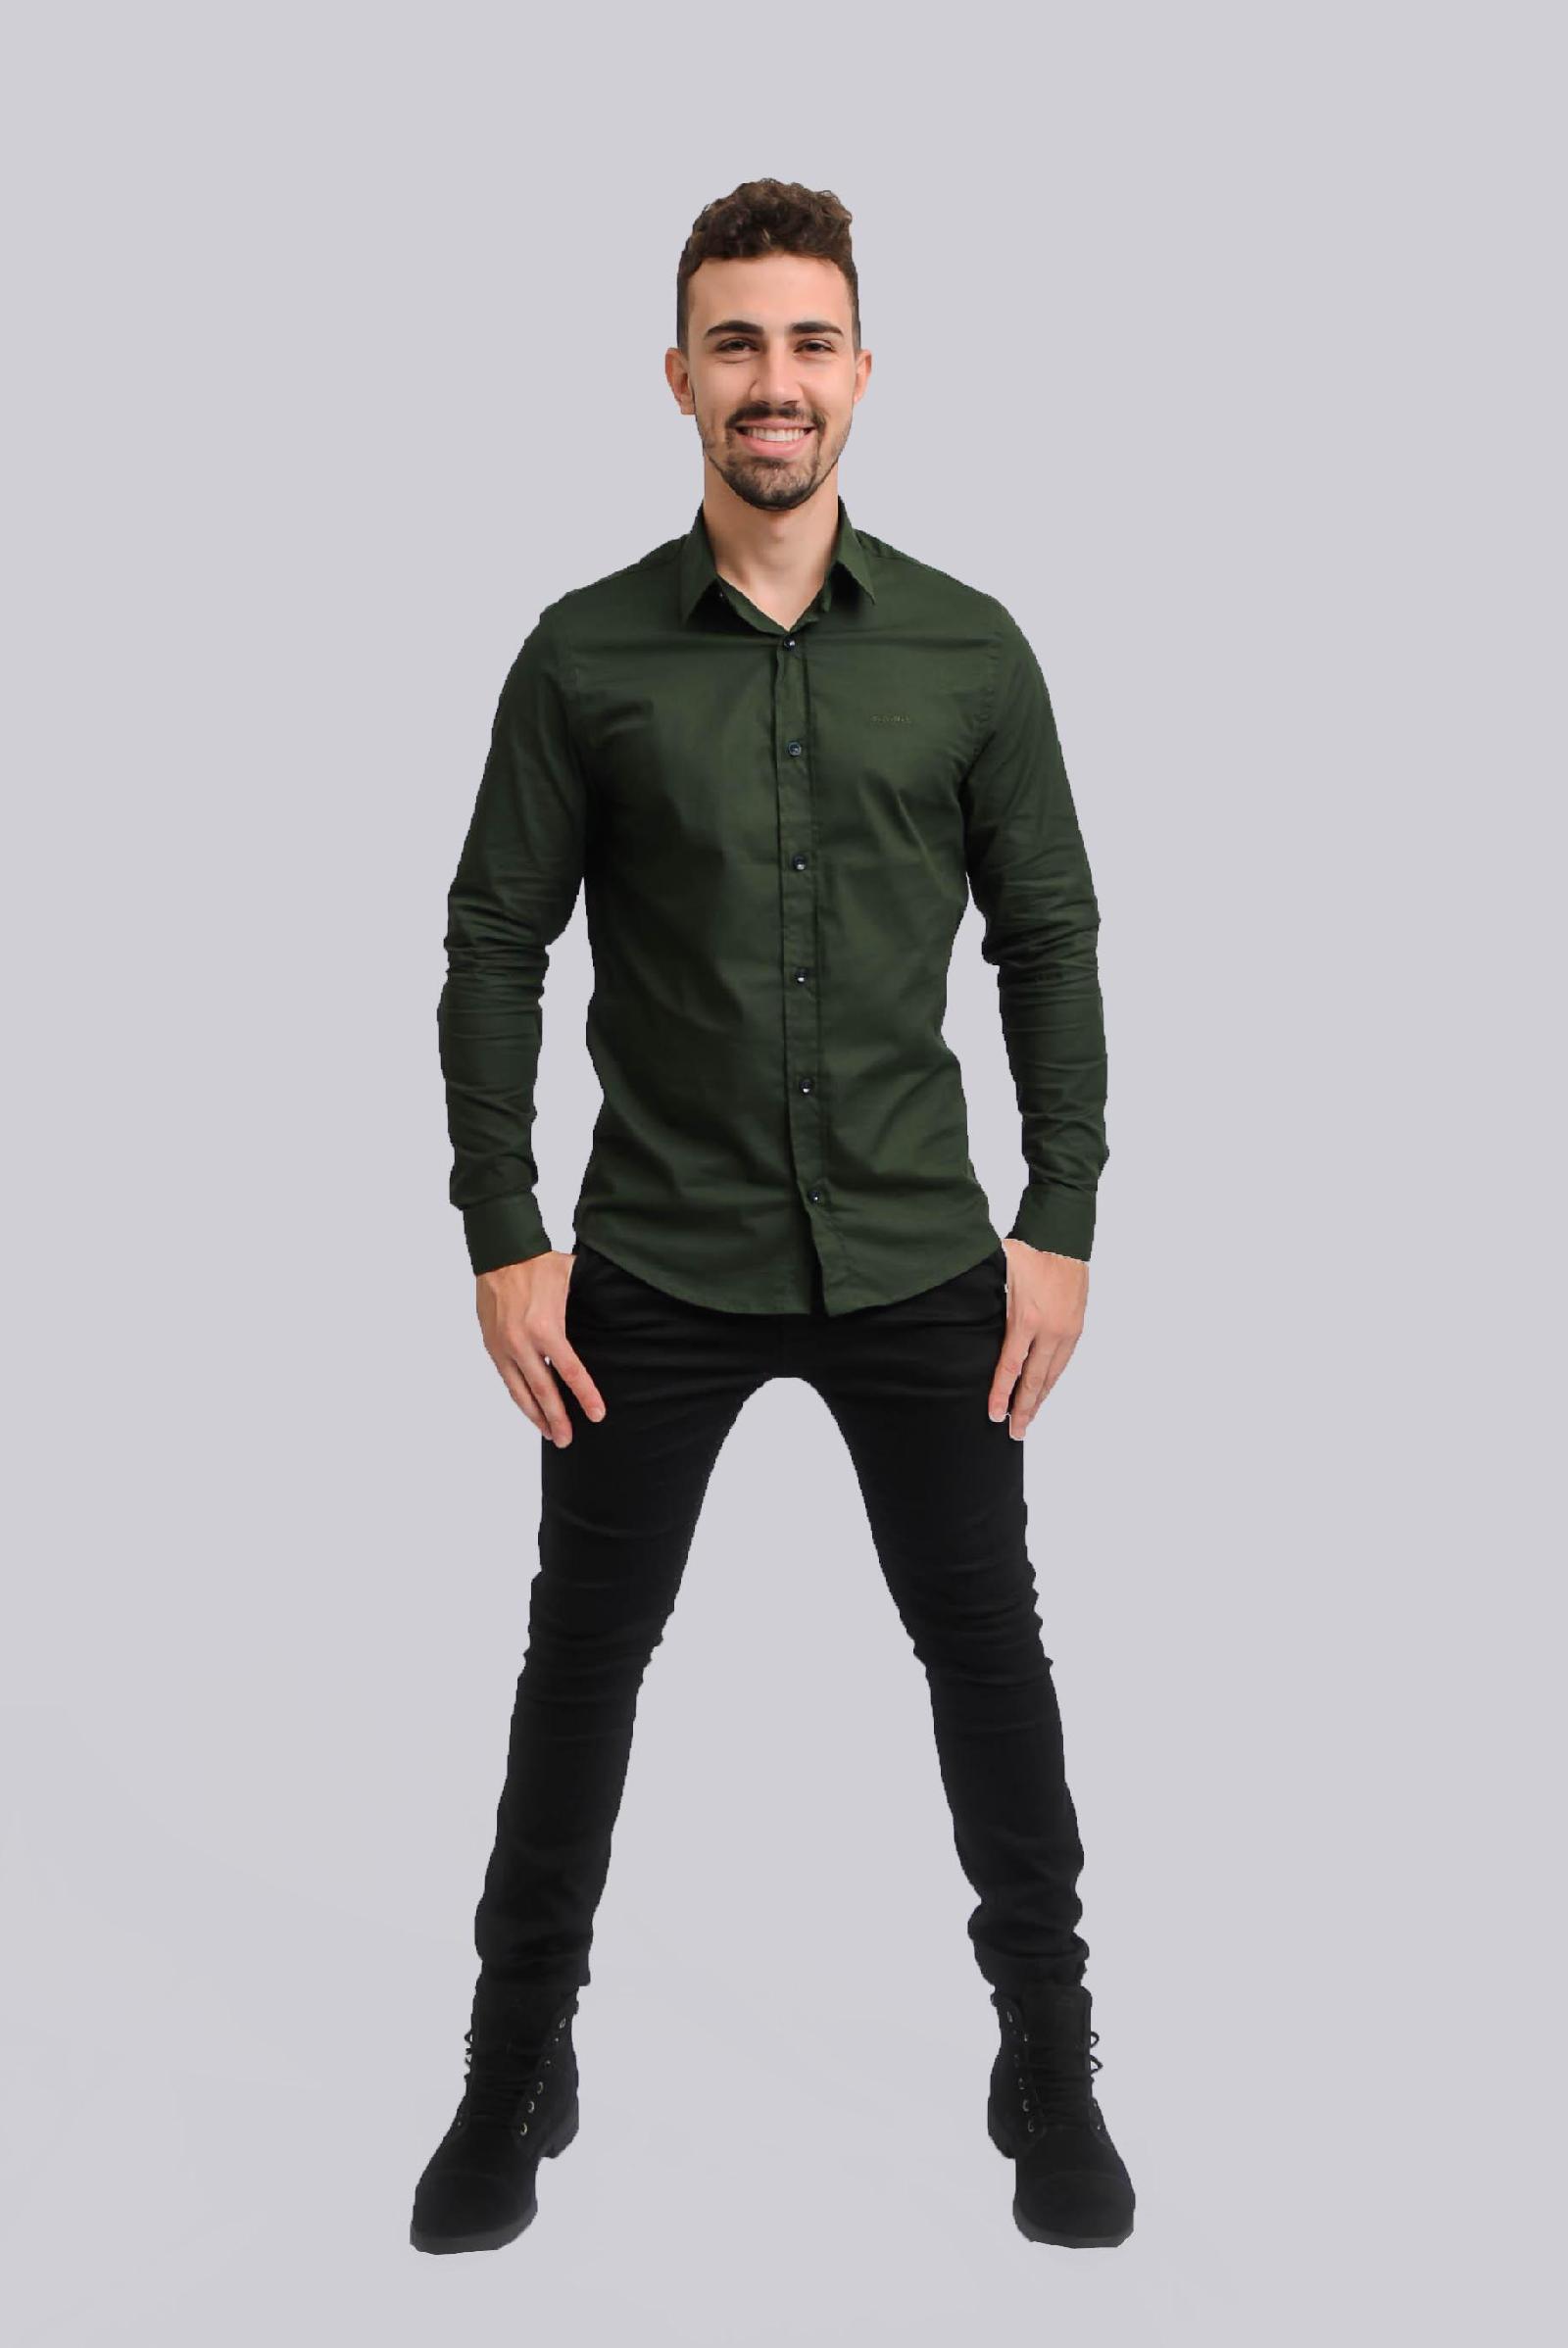 camisa verde com calça preta